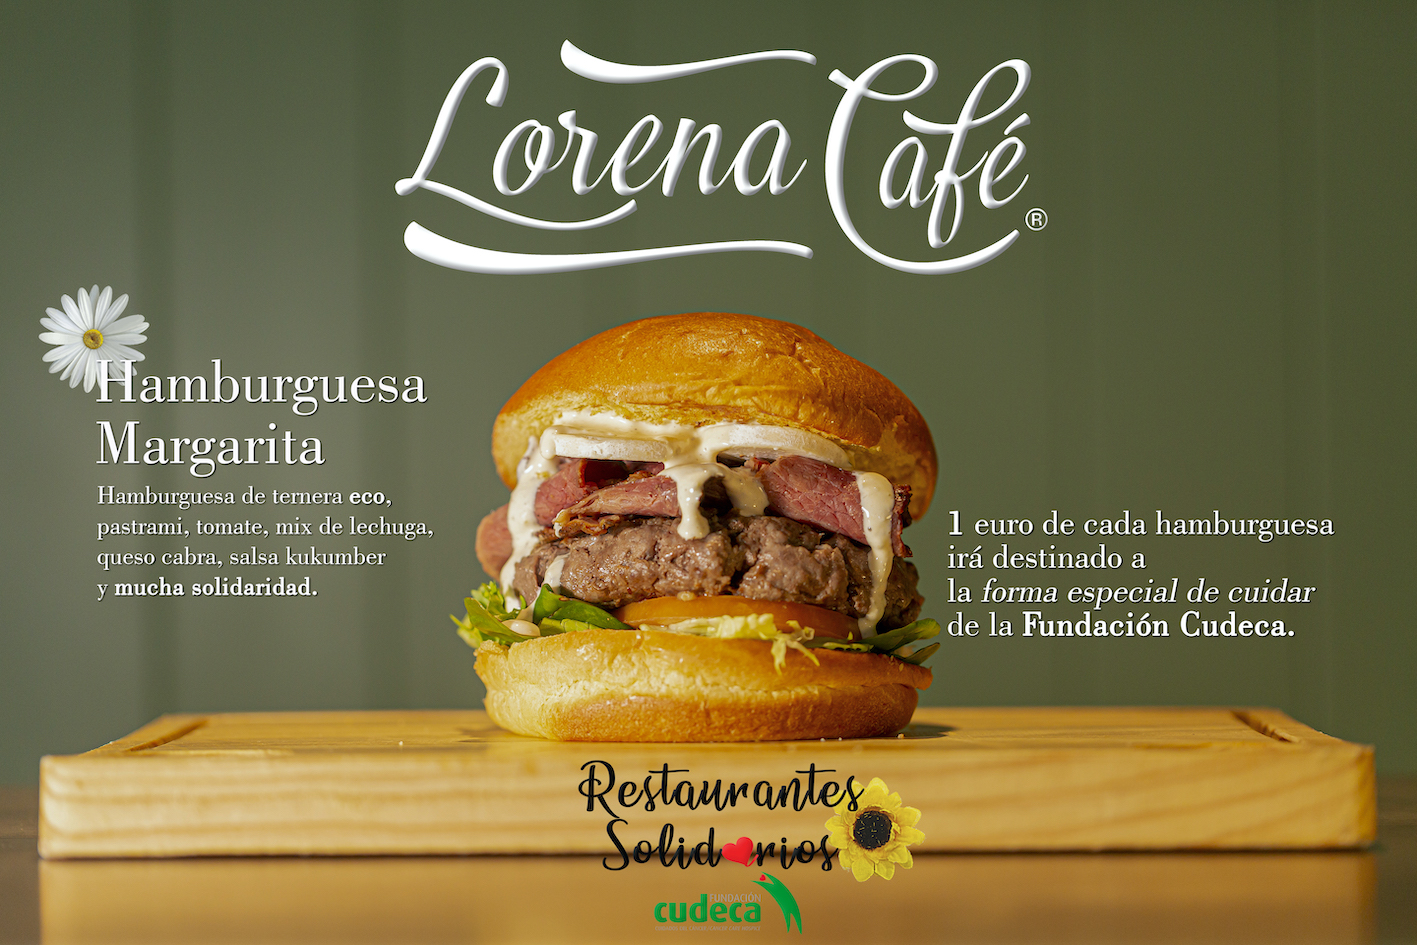 Lorena Café in aid of Cudeca. Margarita Burger